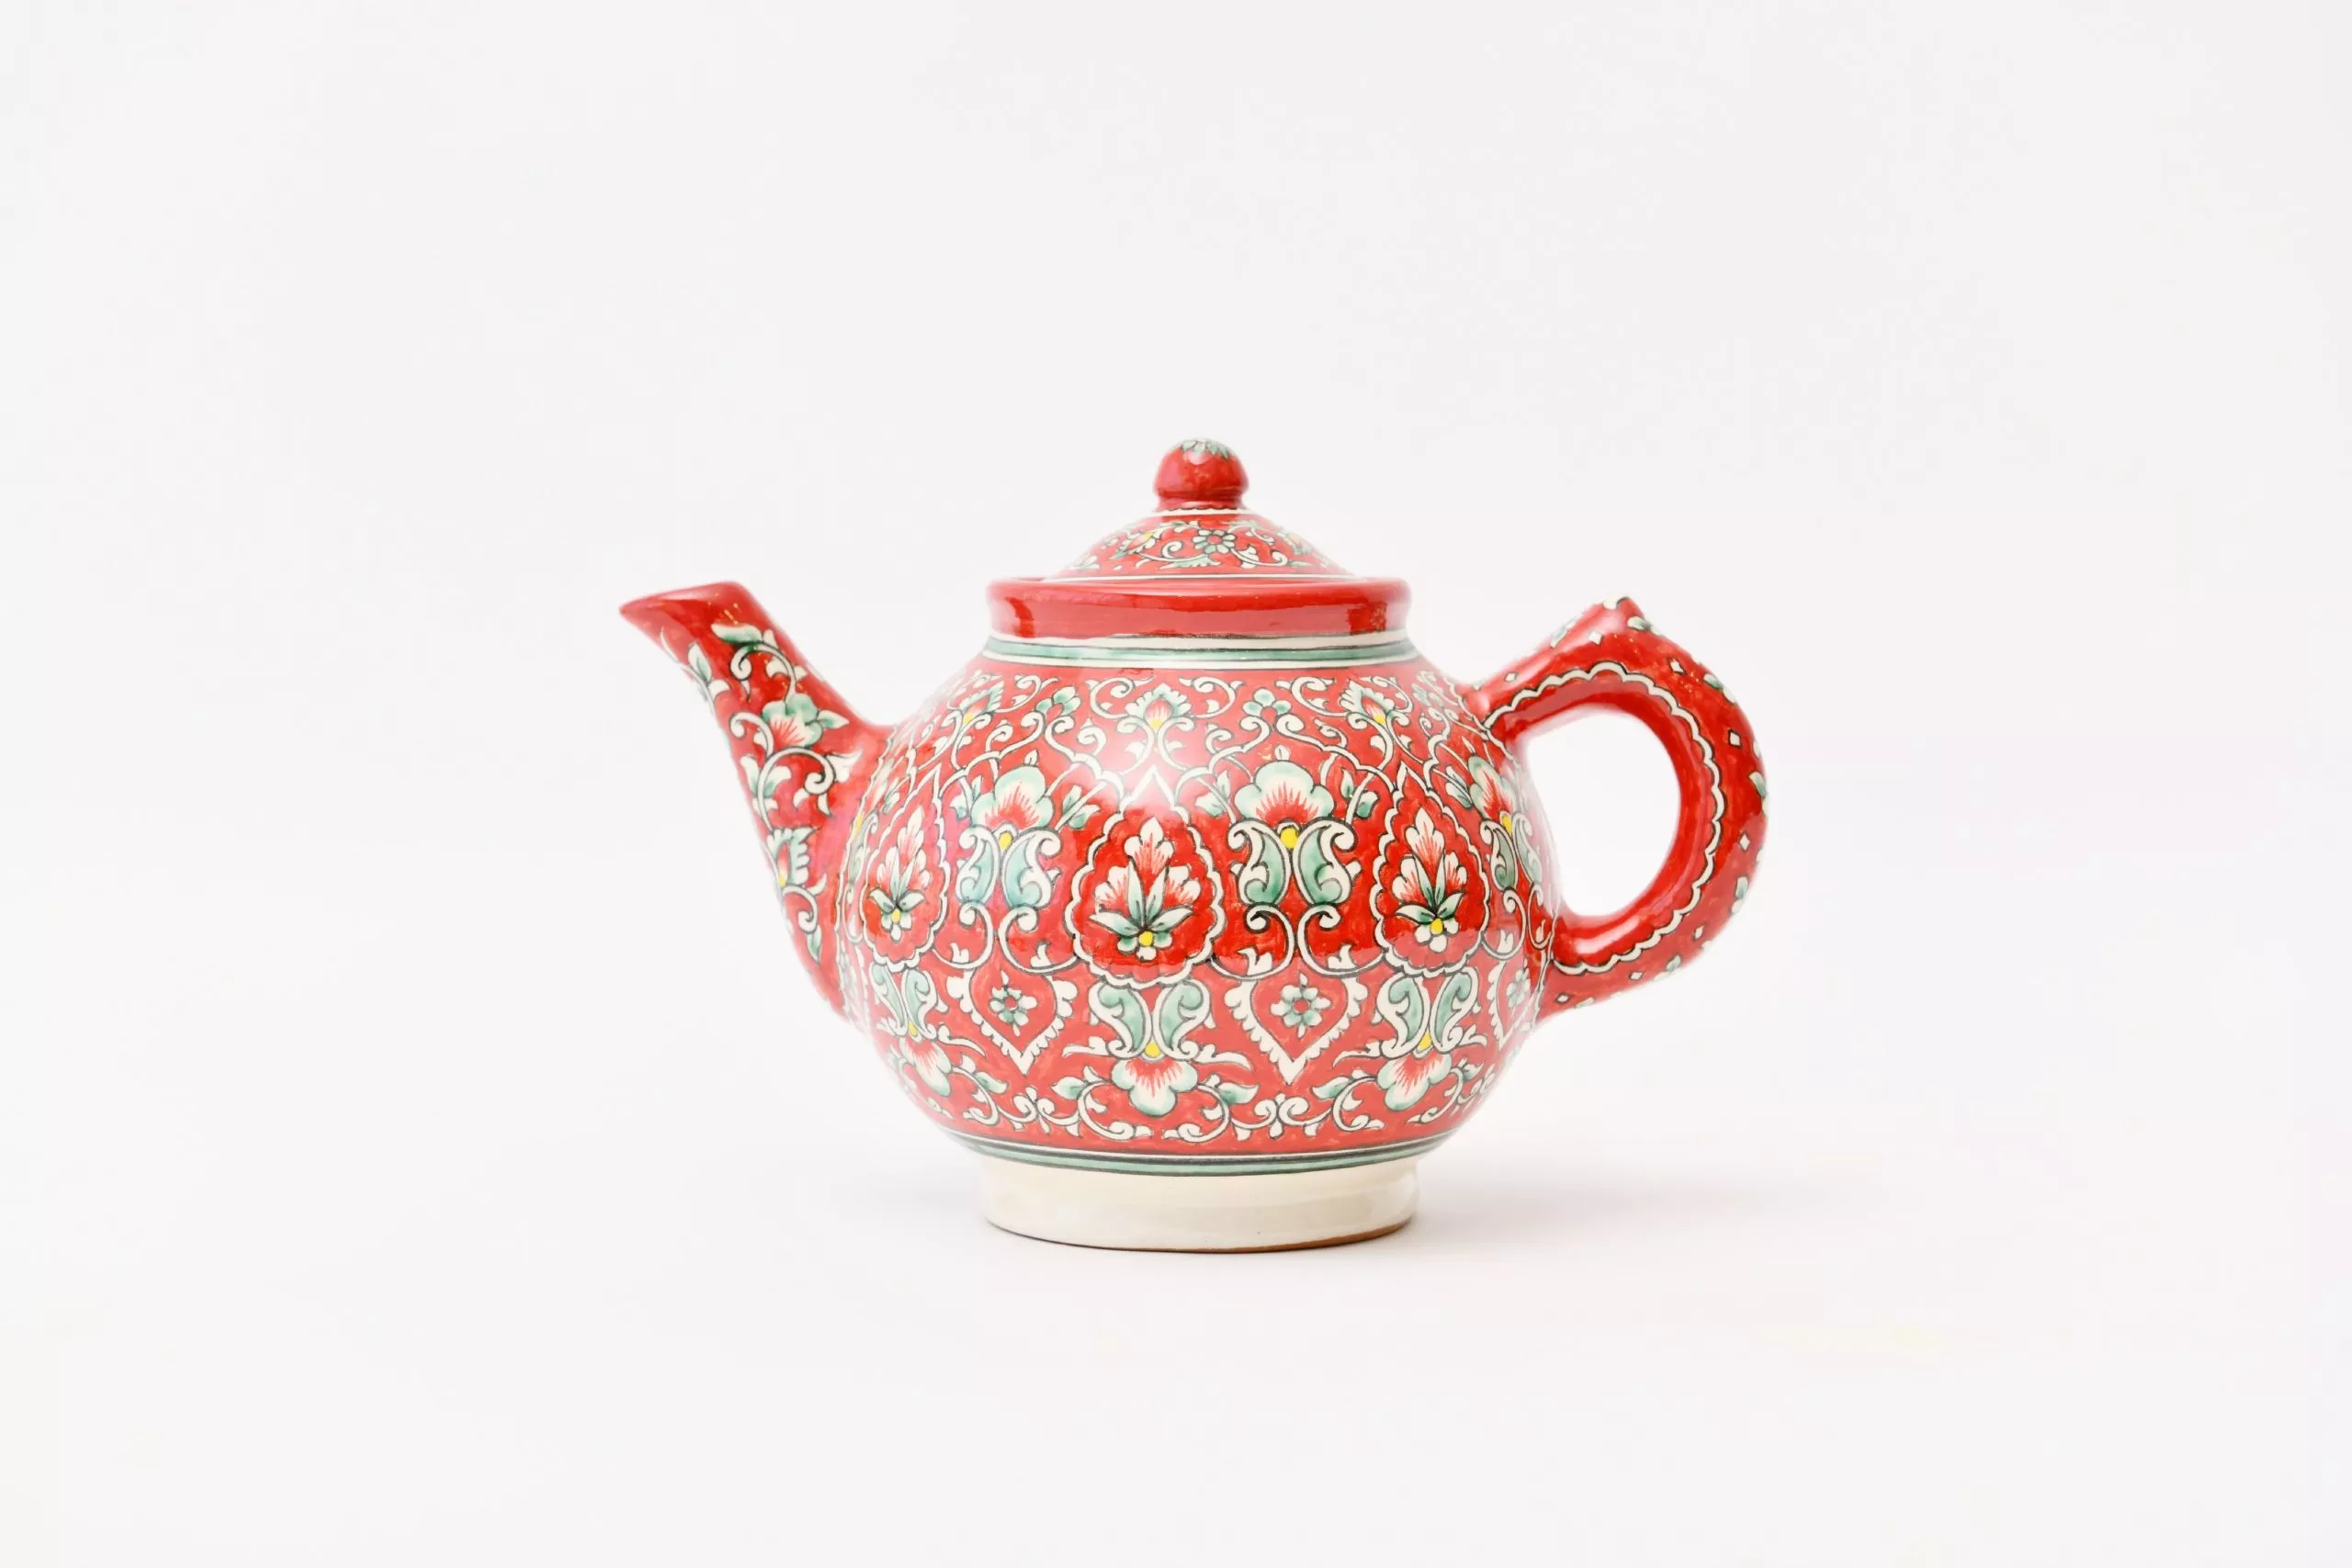 Coral teapot